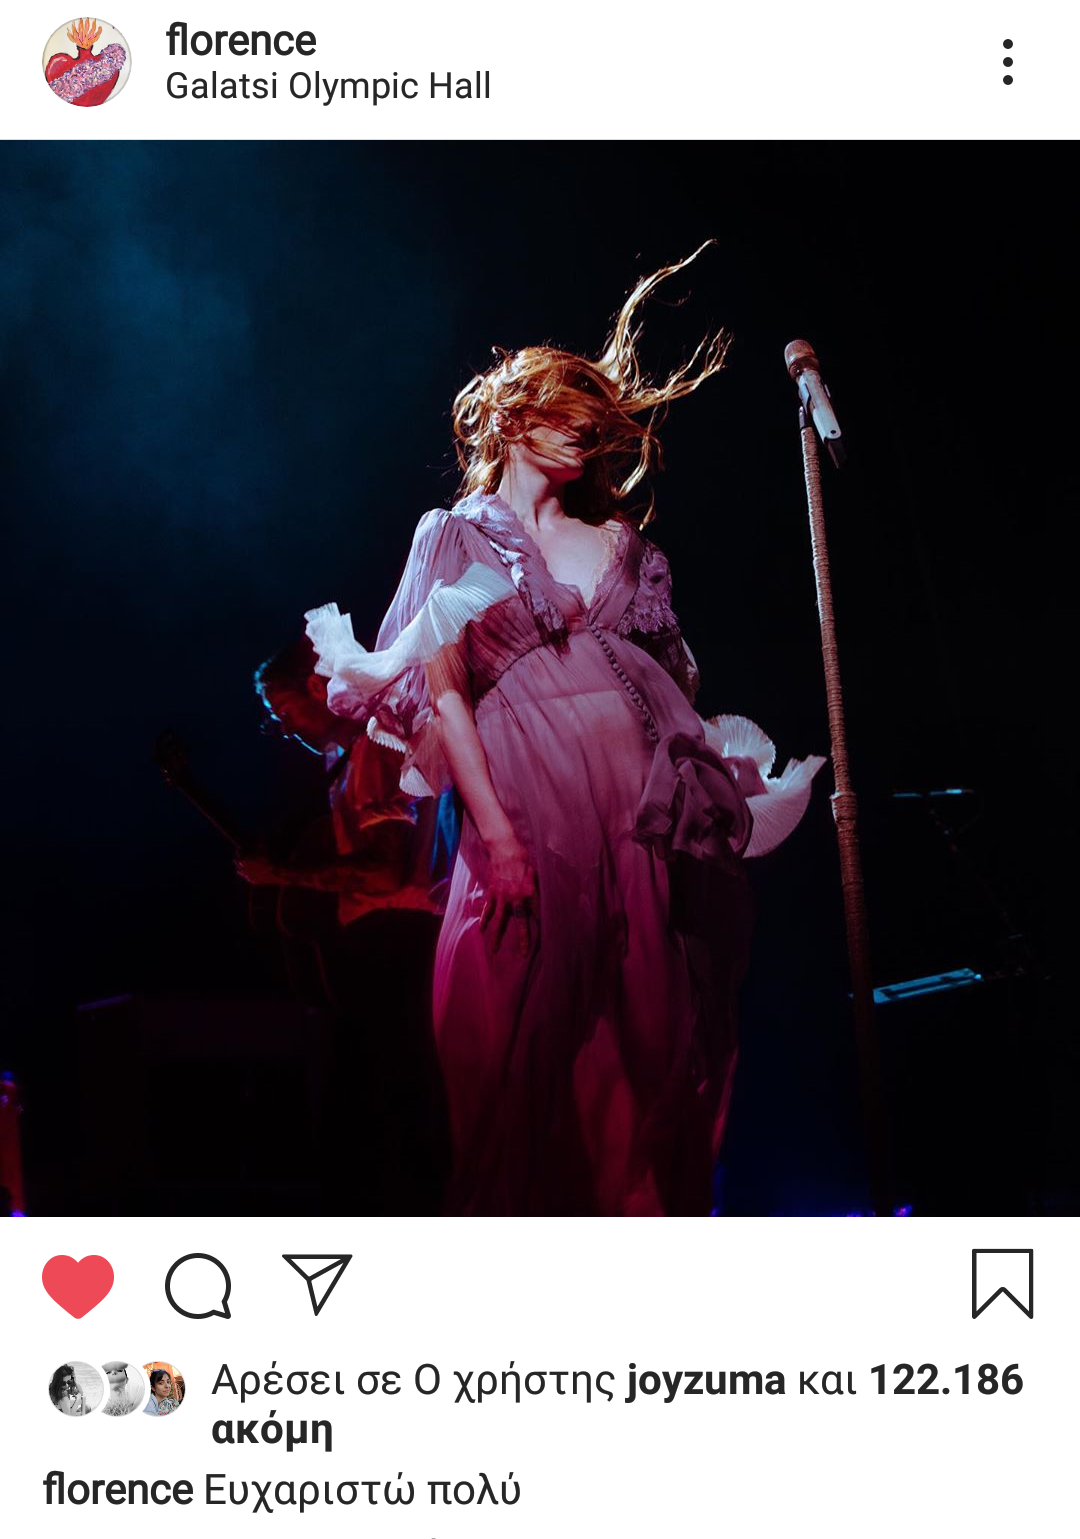 Το "ευχαριστώ" των Florence and the Machine μετά τις συναυλίες τους το 2019